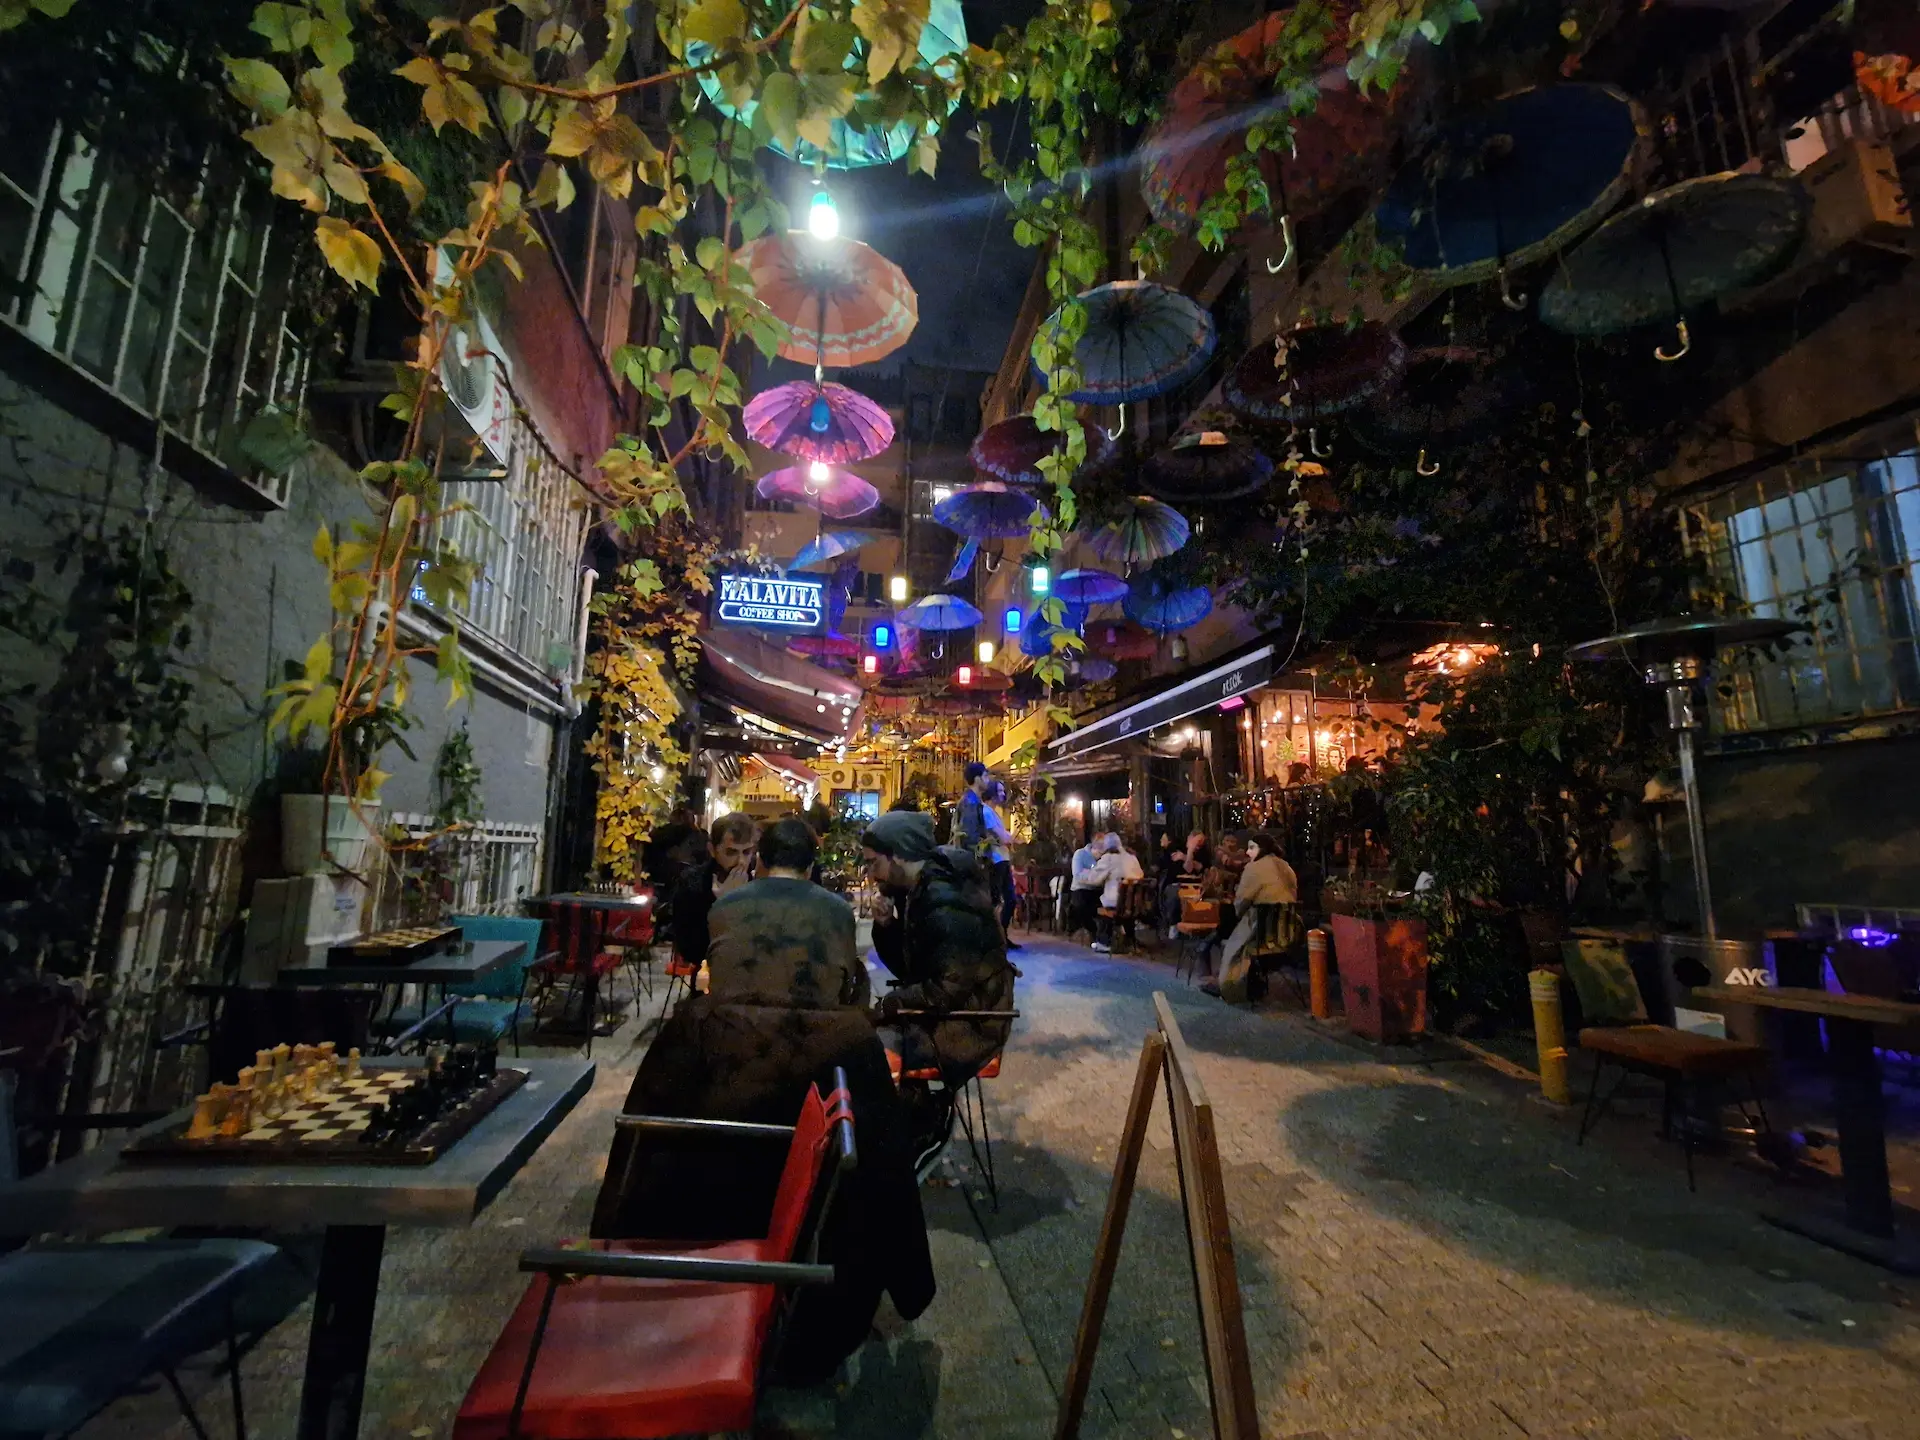 Une ruelle du quartier des bars de Kadıköy le soir, on voit des tables où sont placés des plateaux d'échecs, la ruelle est décorée de plantes grimpantes et de parapluies suspendus.